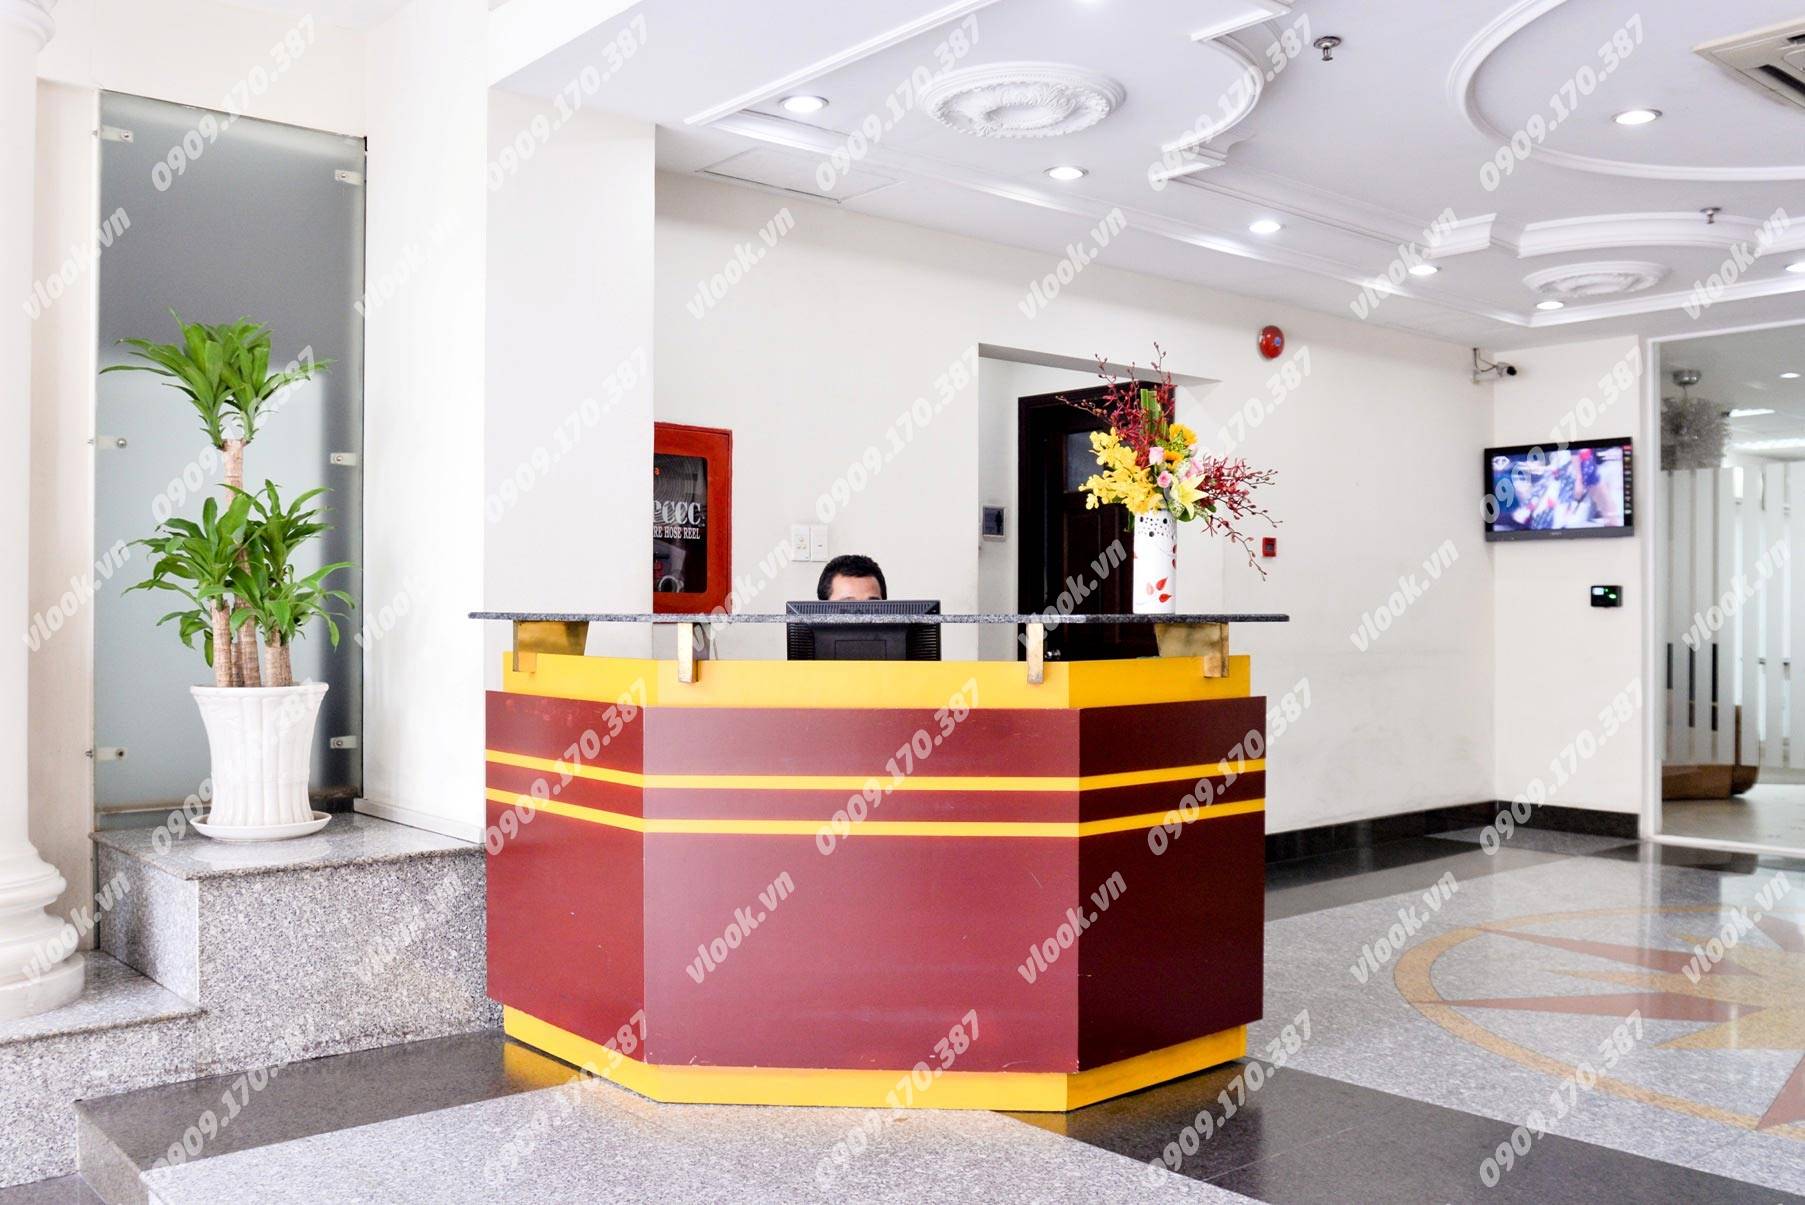 Cao ốc cho thuê văn phòng Capital Place, Thái Văn Lung, Quận 1, TPHCM - vlook.vn